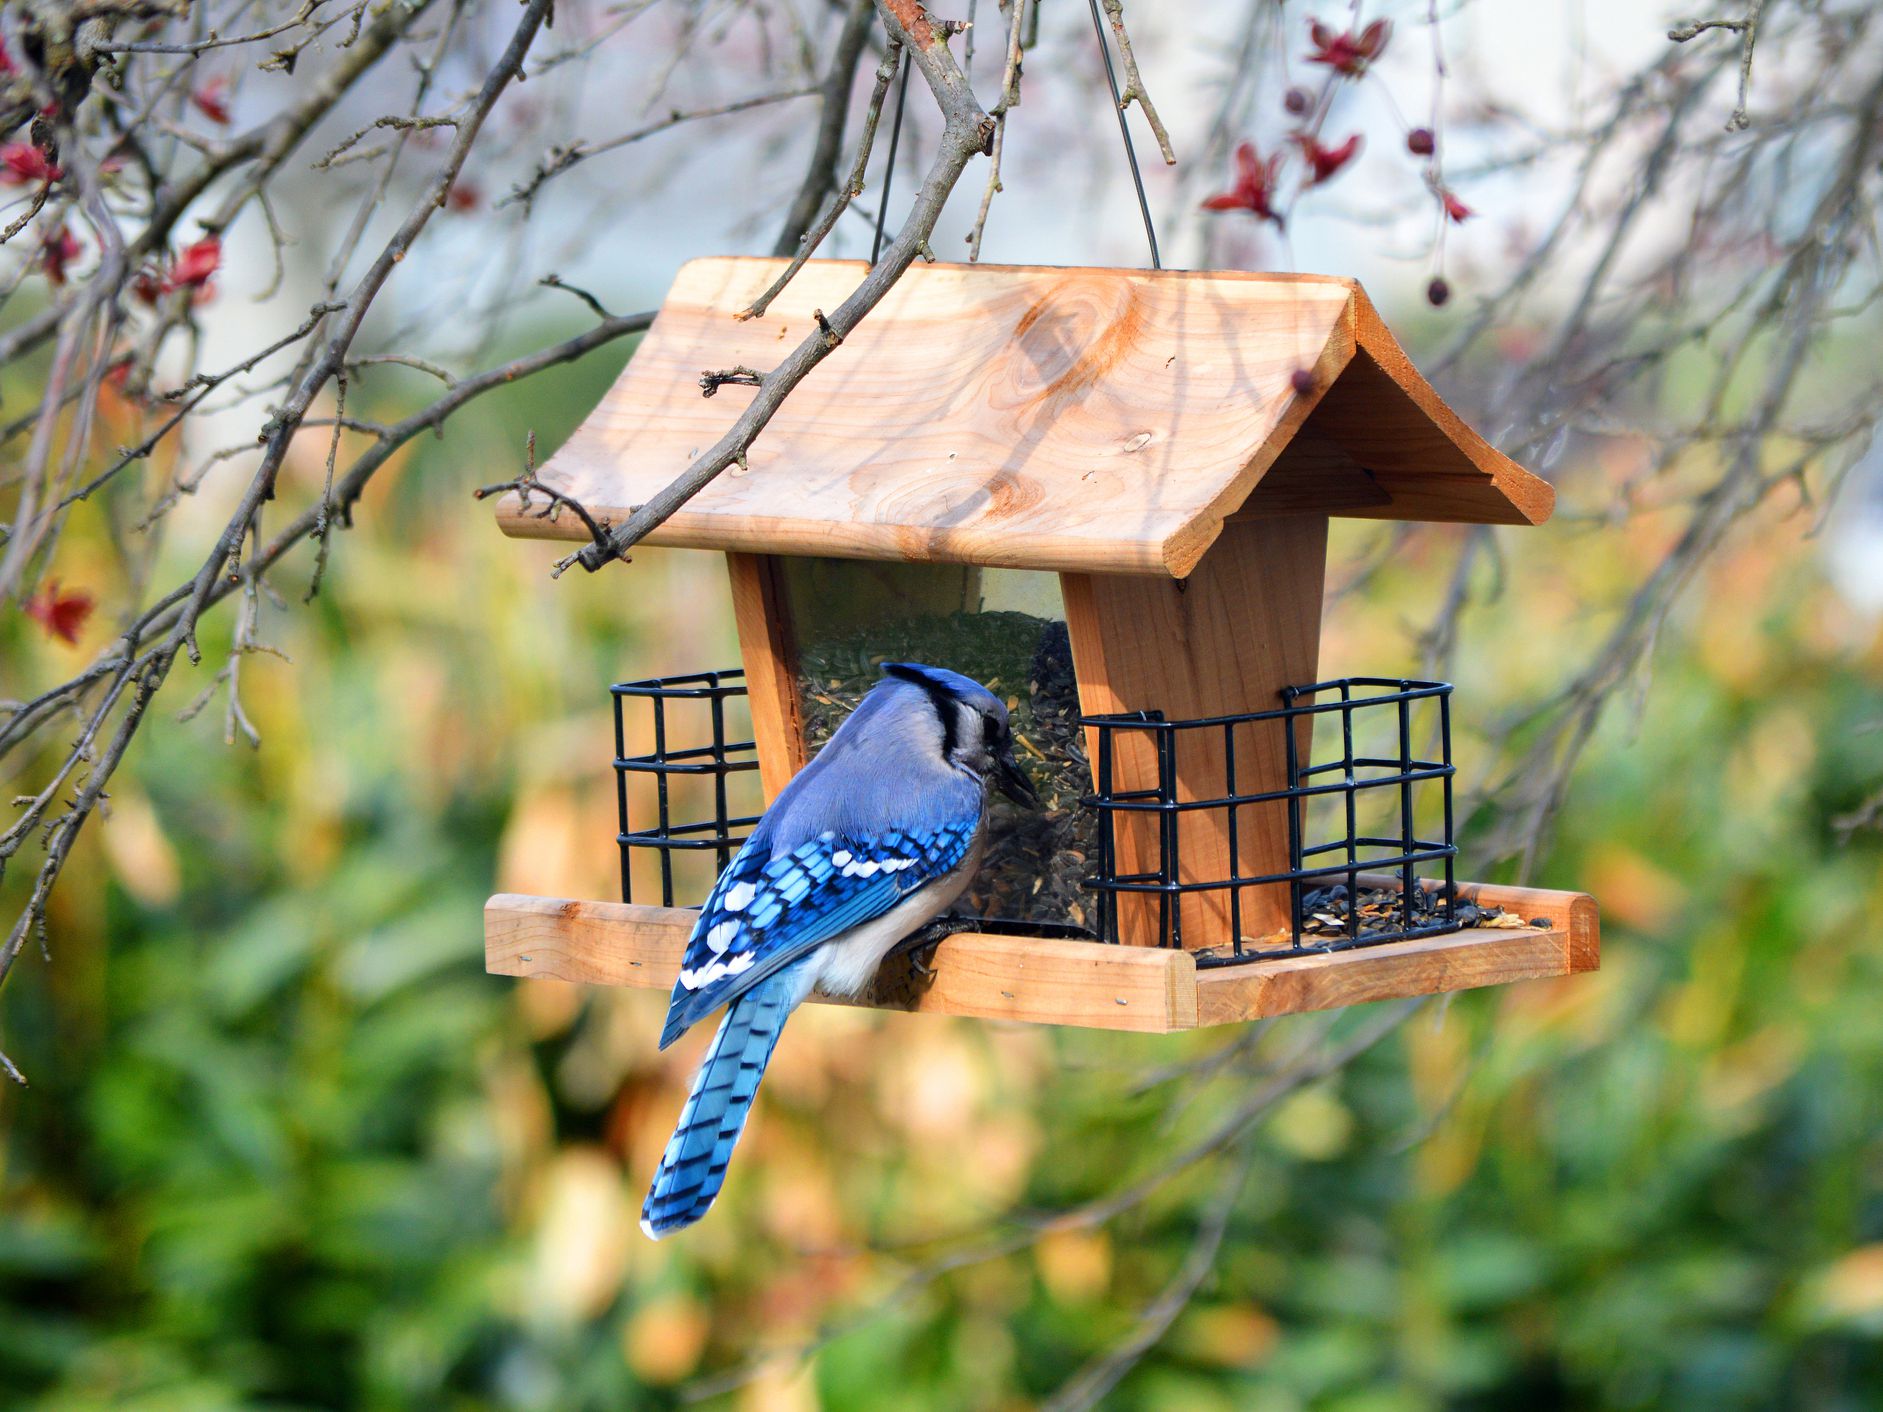 Blue bird eating seeds from a wooden bird feeder.